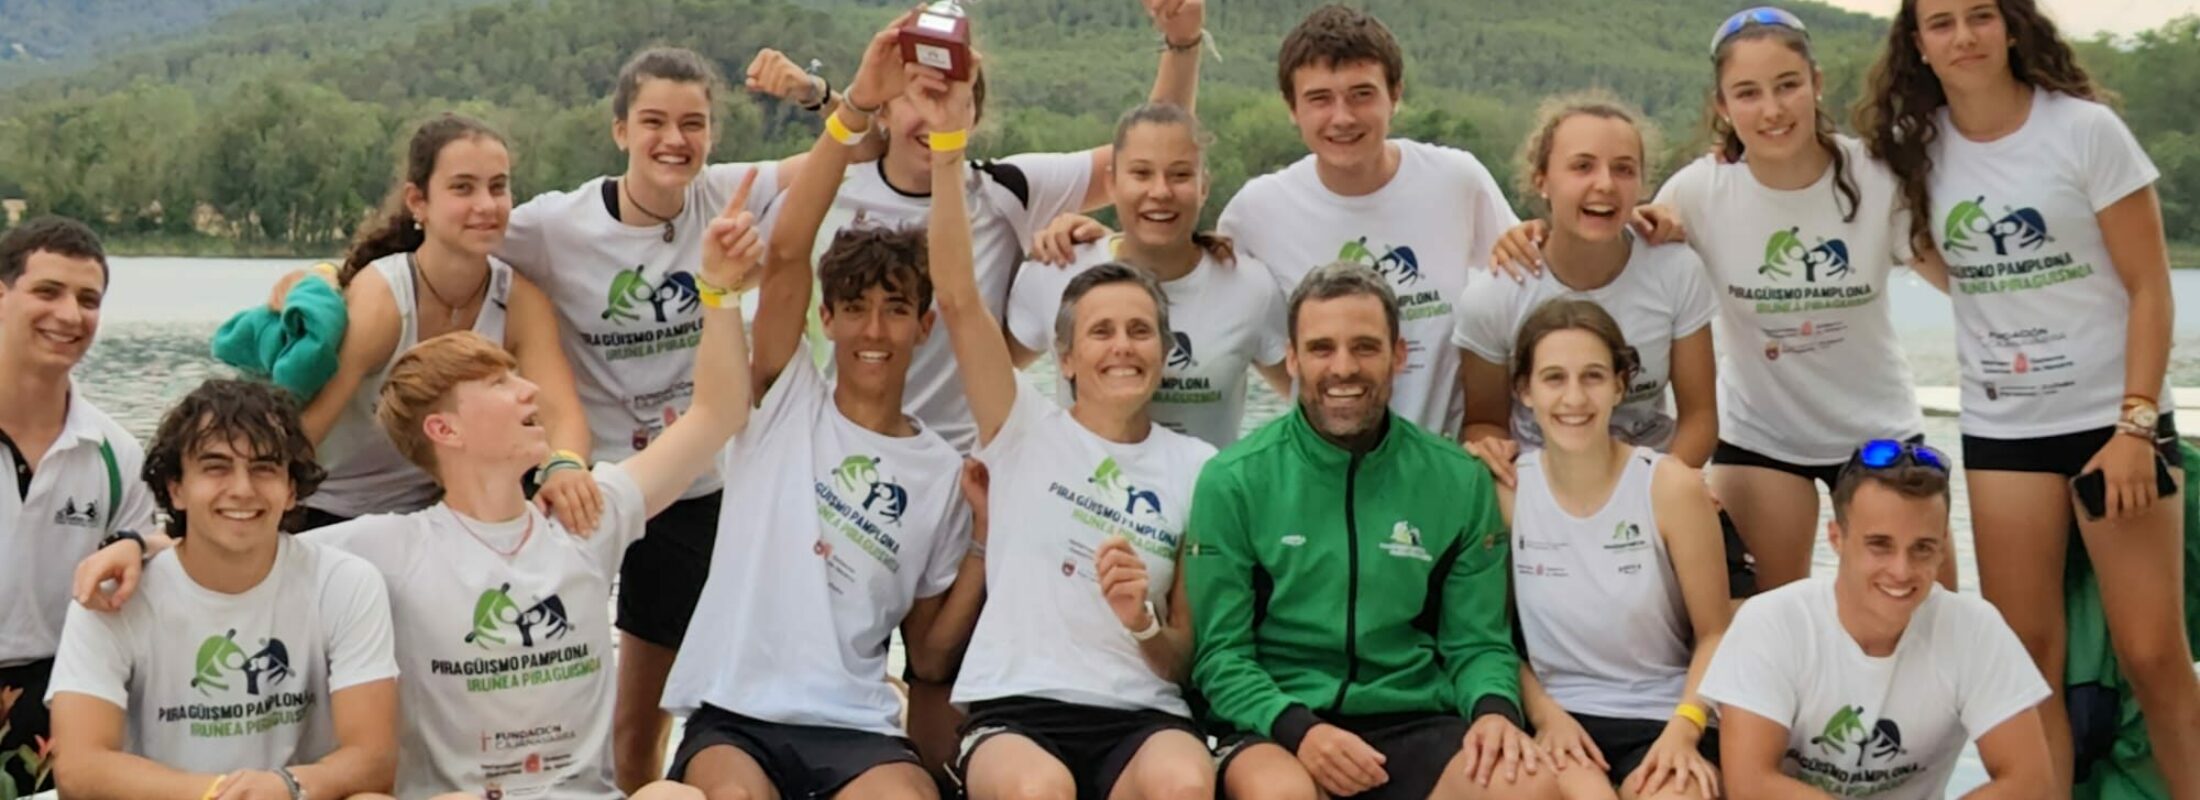 El Piragüismo Pamplona tercero por equipos en el Campeonato de España de Maratón y cuatro medallas individuales